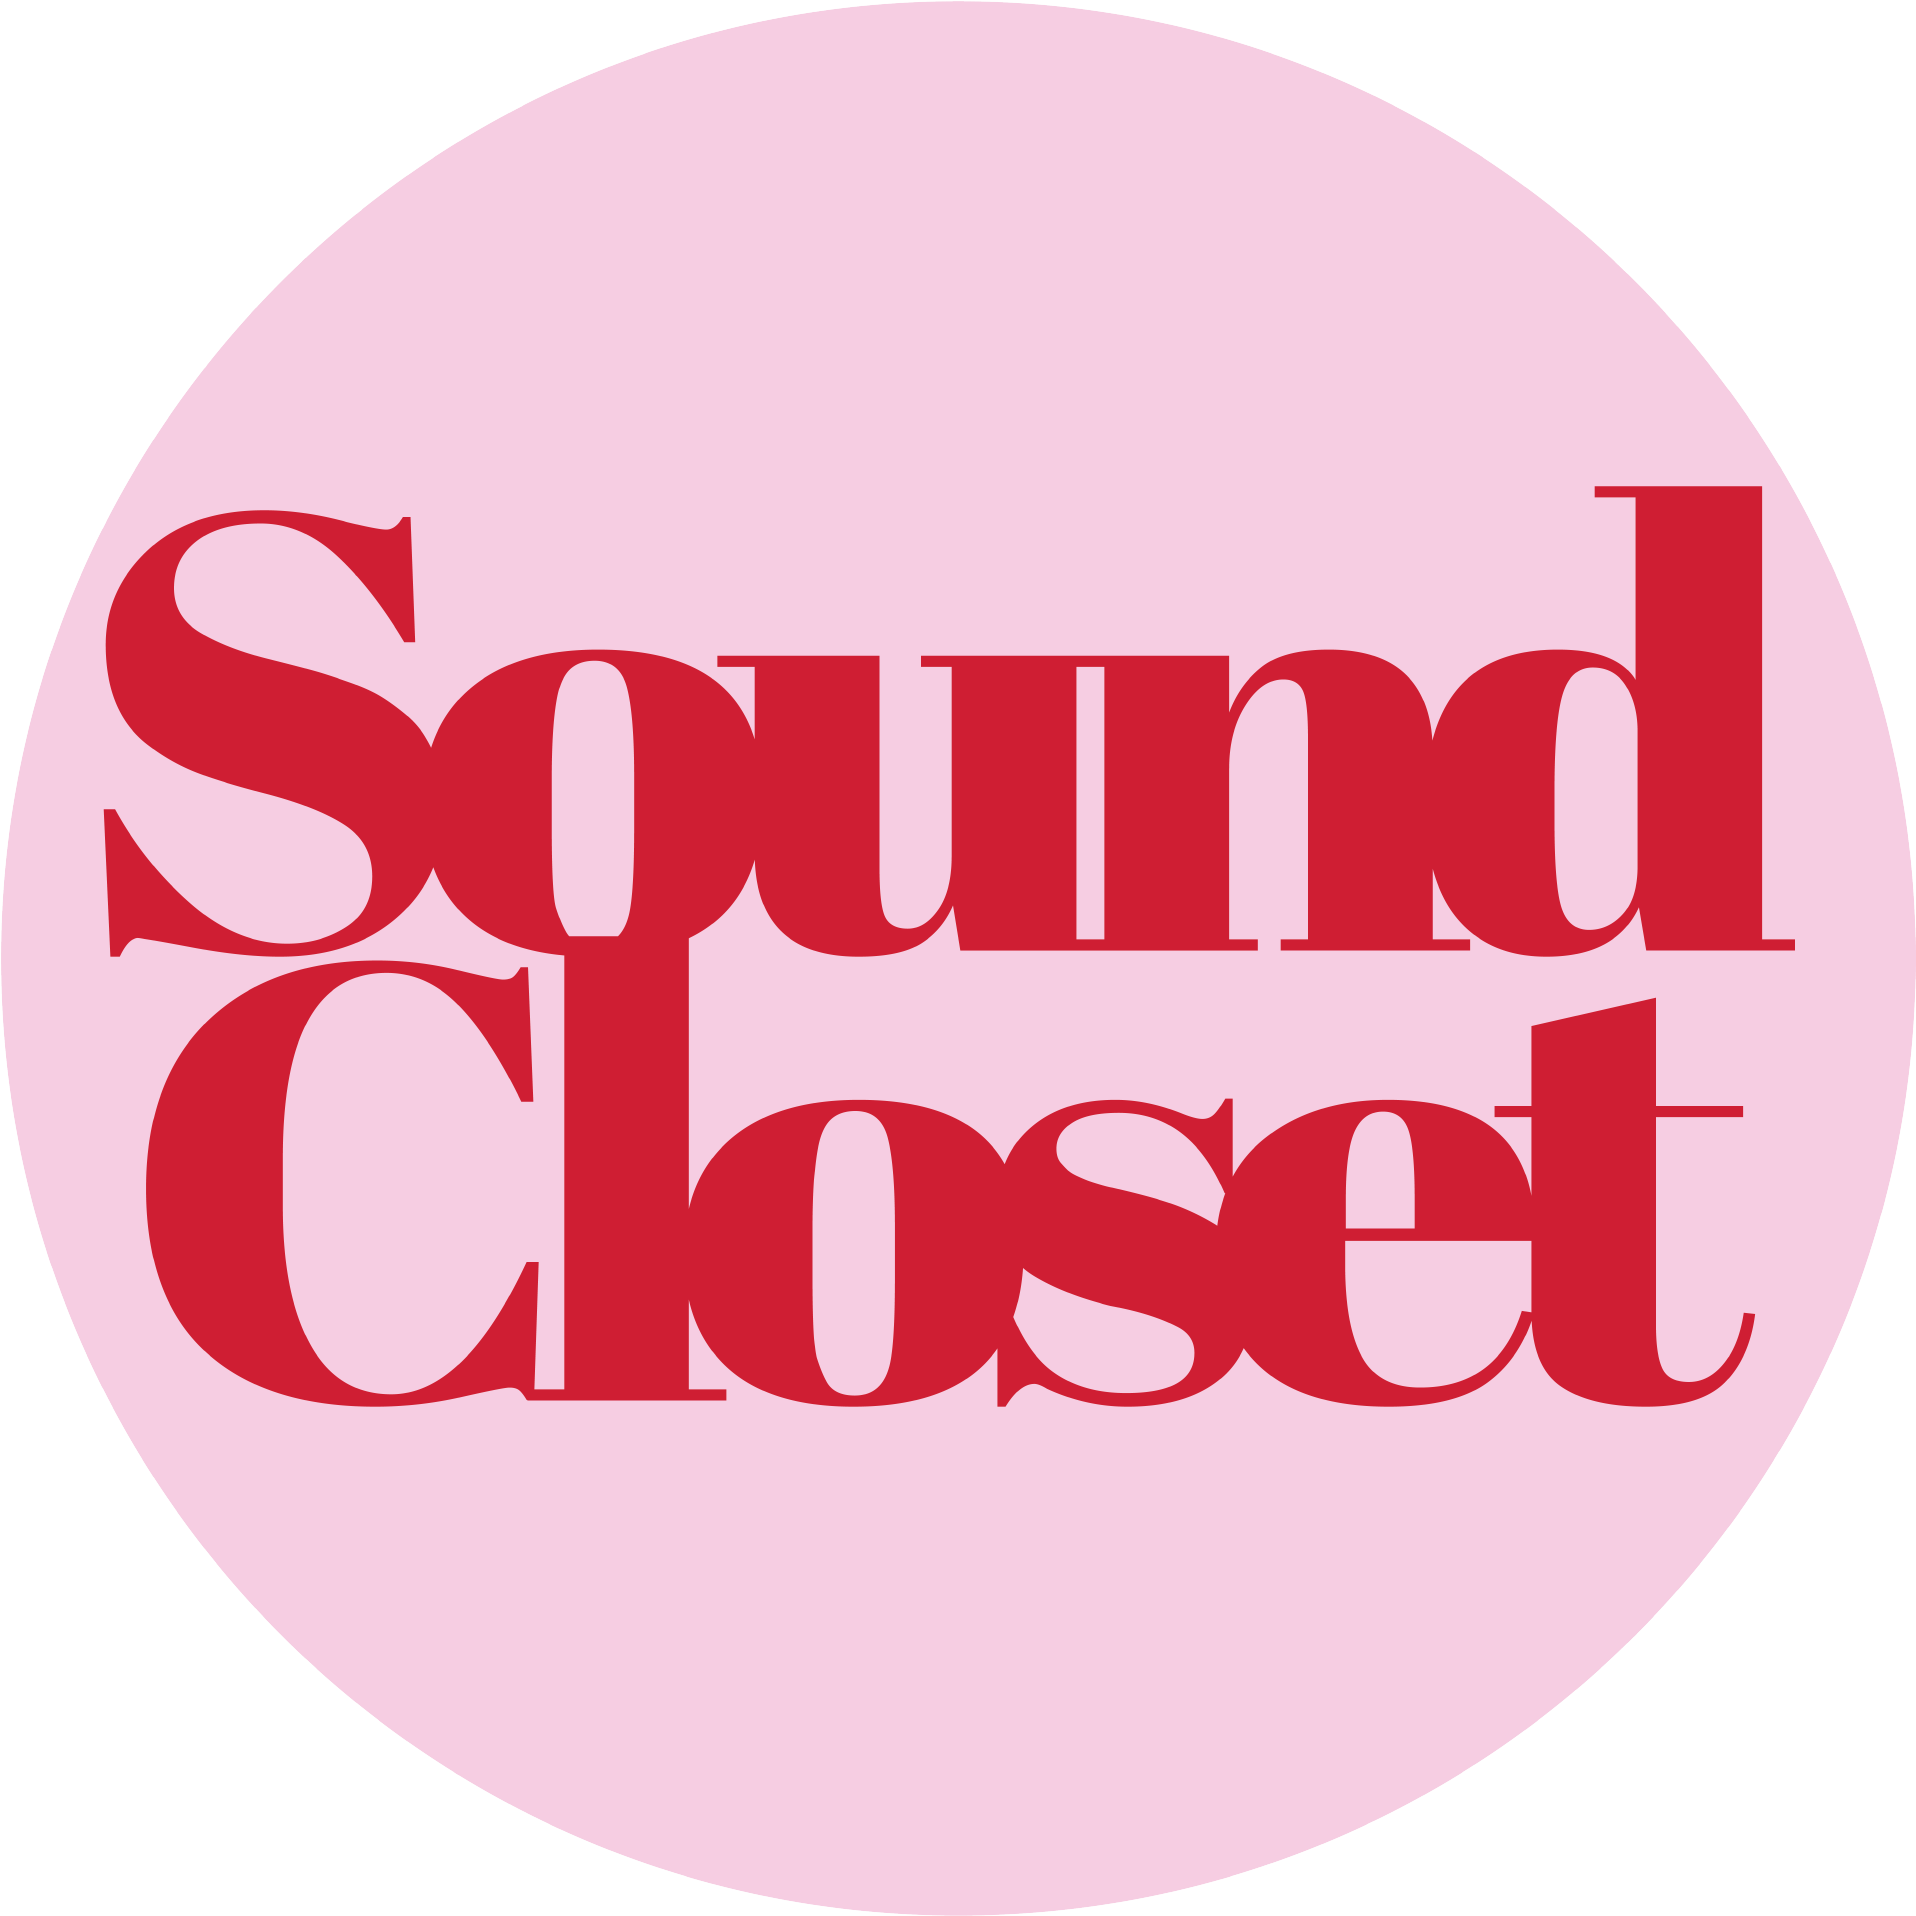 Sound Closet